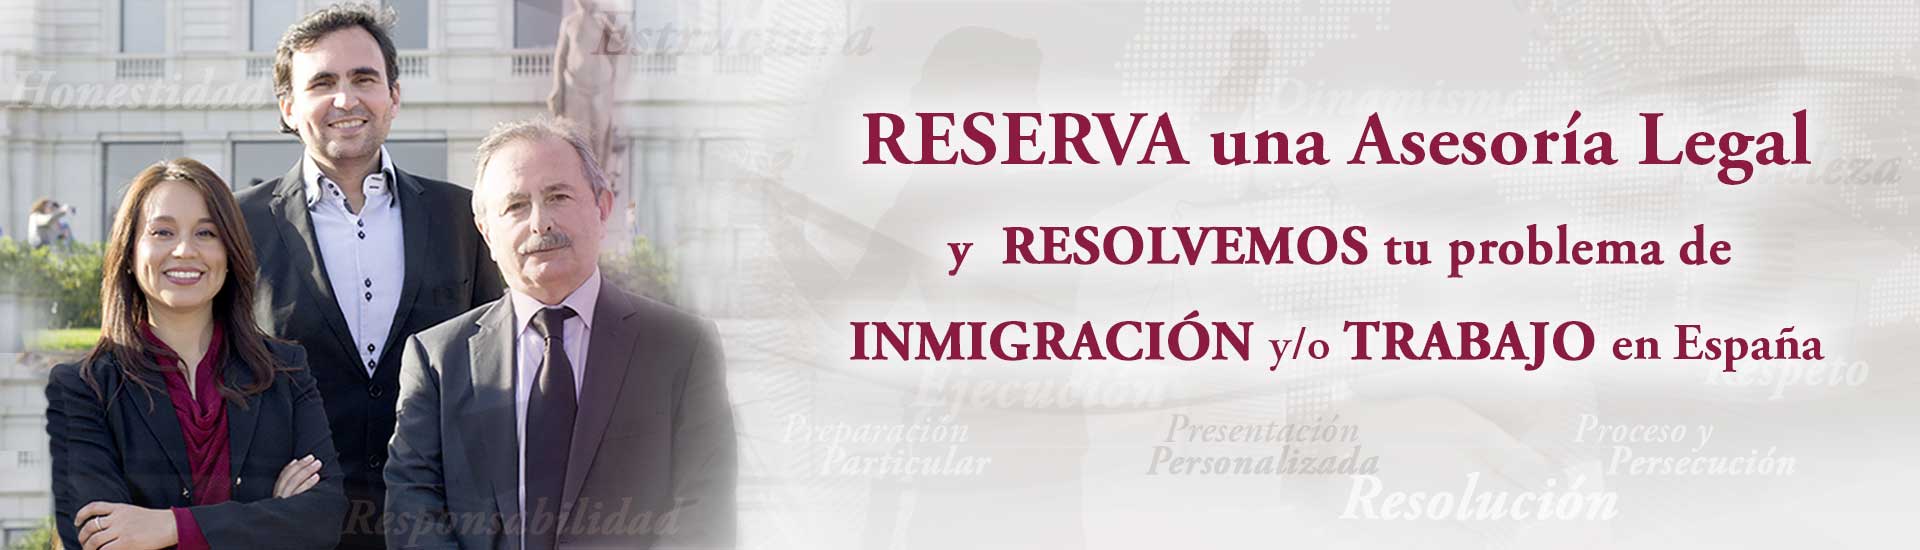 Abogados extranjería inmigración laboral Barcelona Habeas Legal - Abogados Internacionales especializados en Extranjería, Inmigración y Laboral